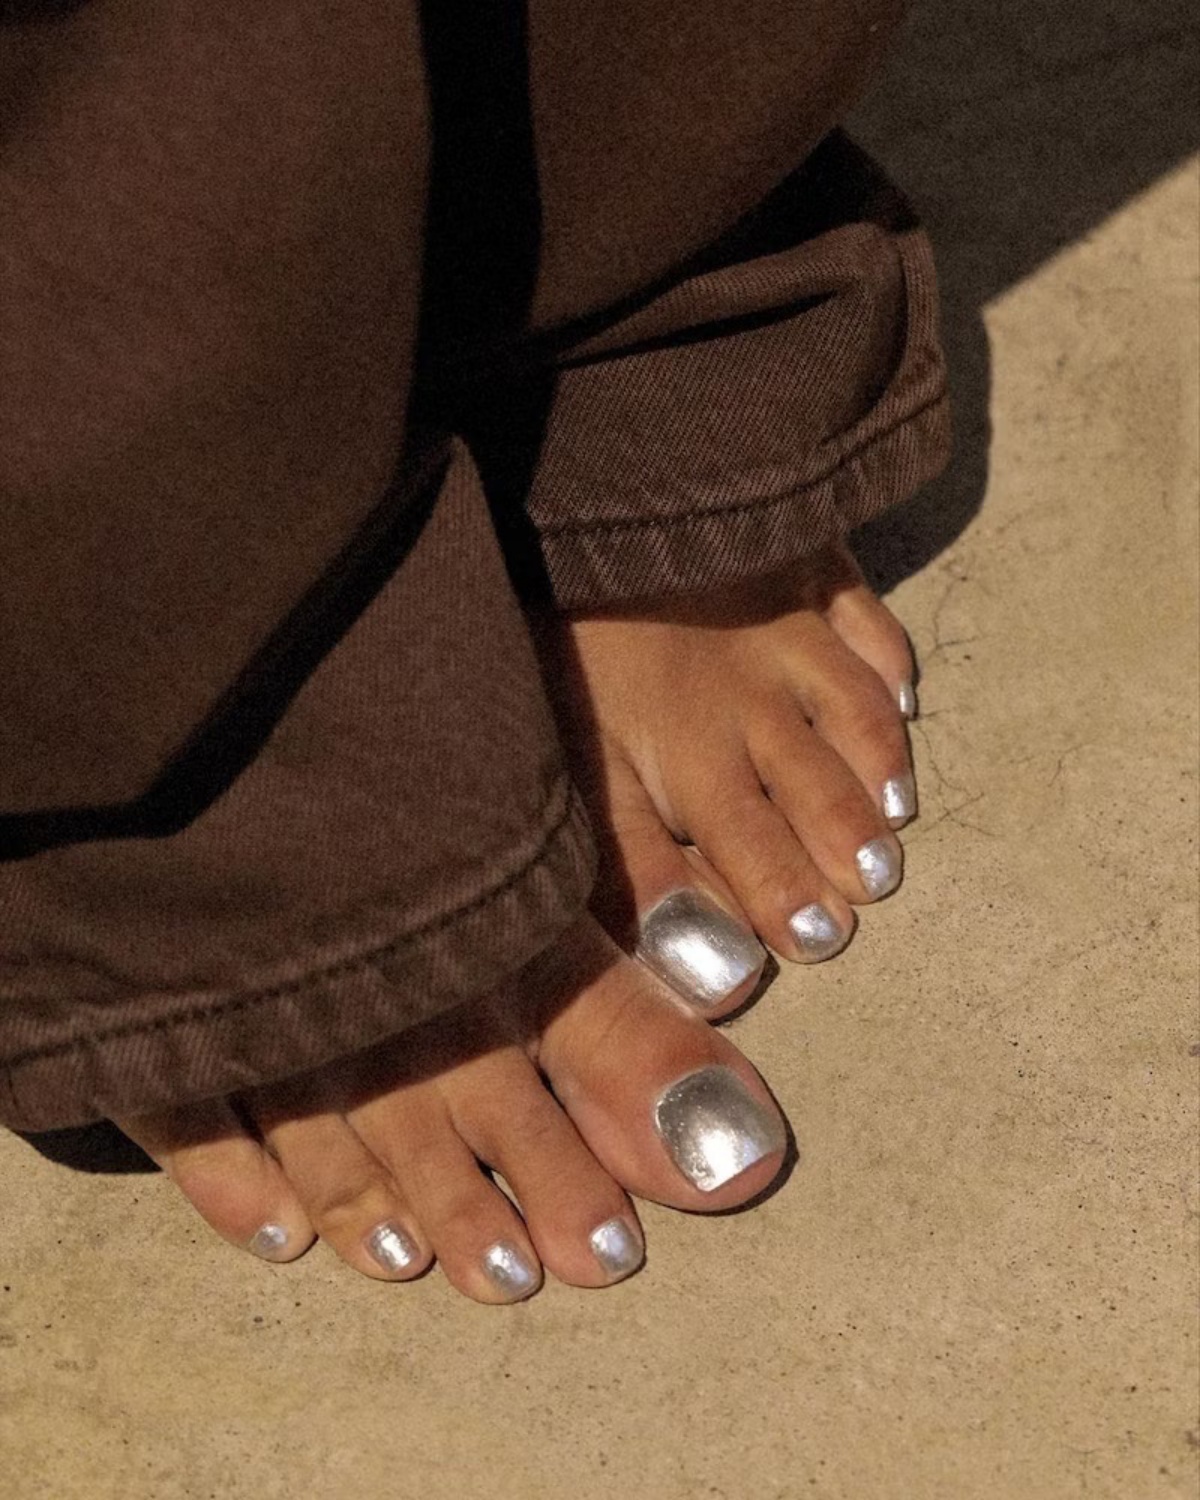 pedicure donna smalto colore argento piedi